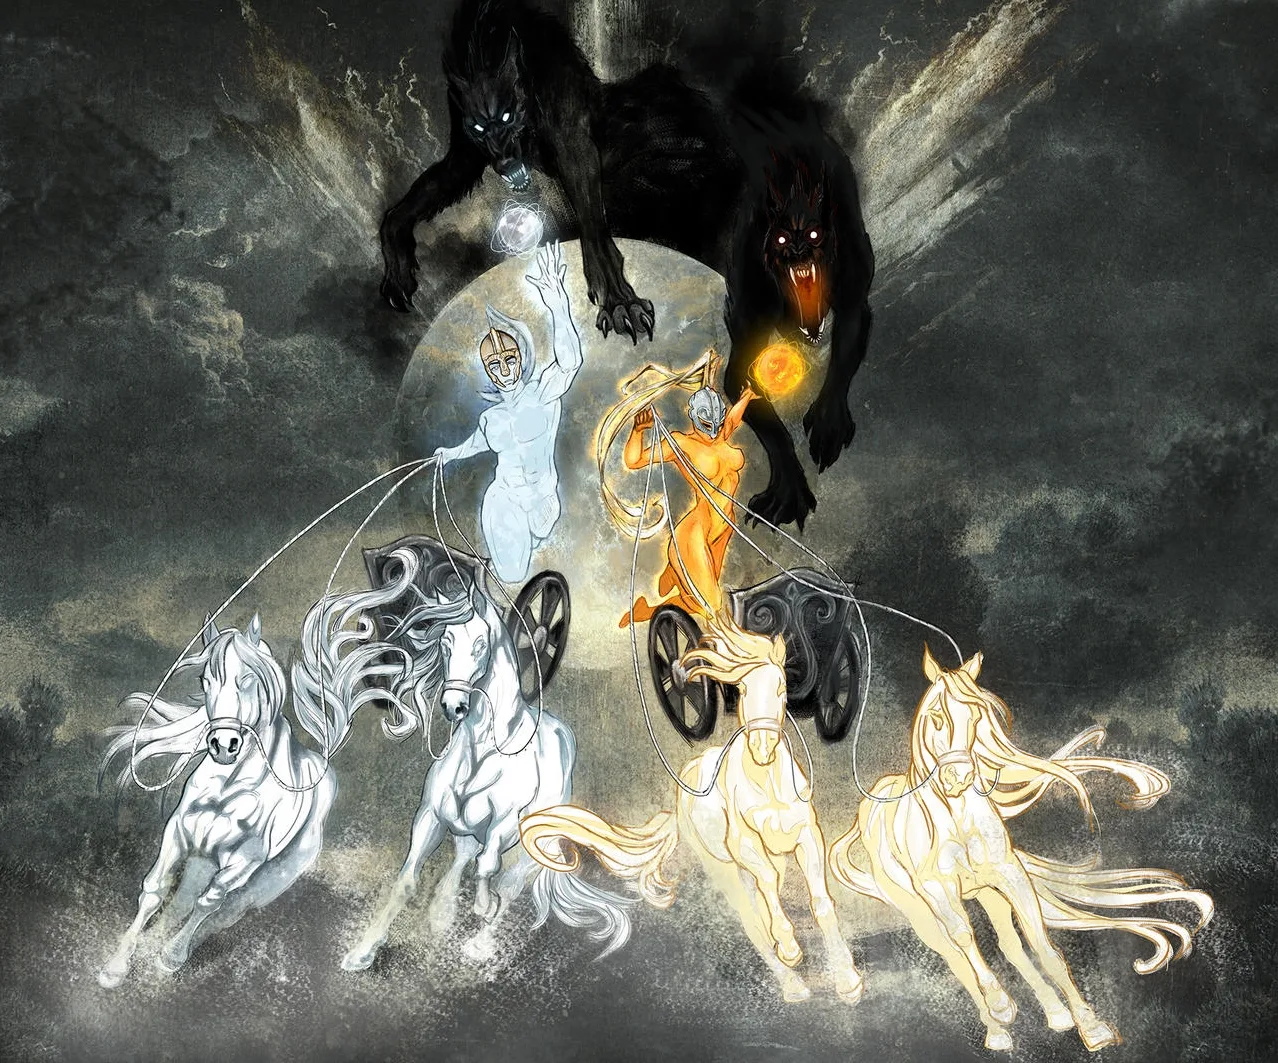 Deuses Sól e Máni na Mitologia Nórdica: Os Luminares Divinos do Dia e da Noite